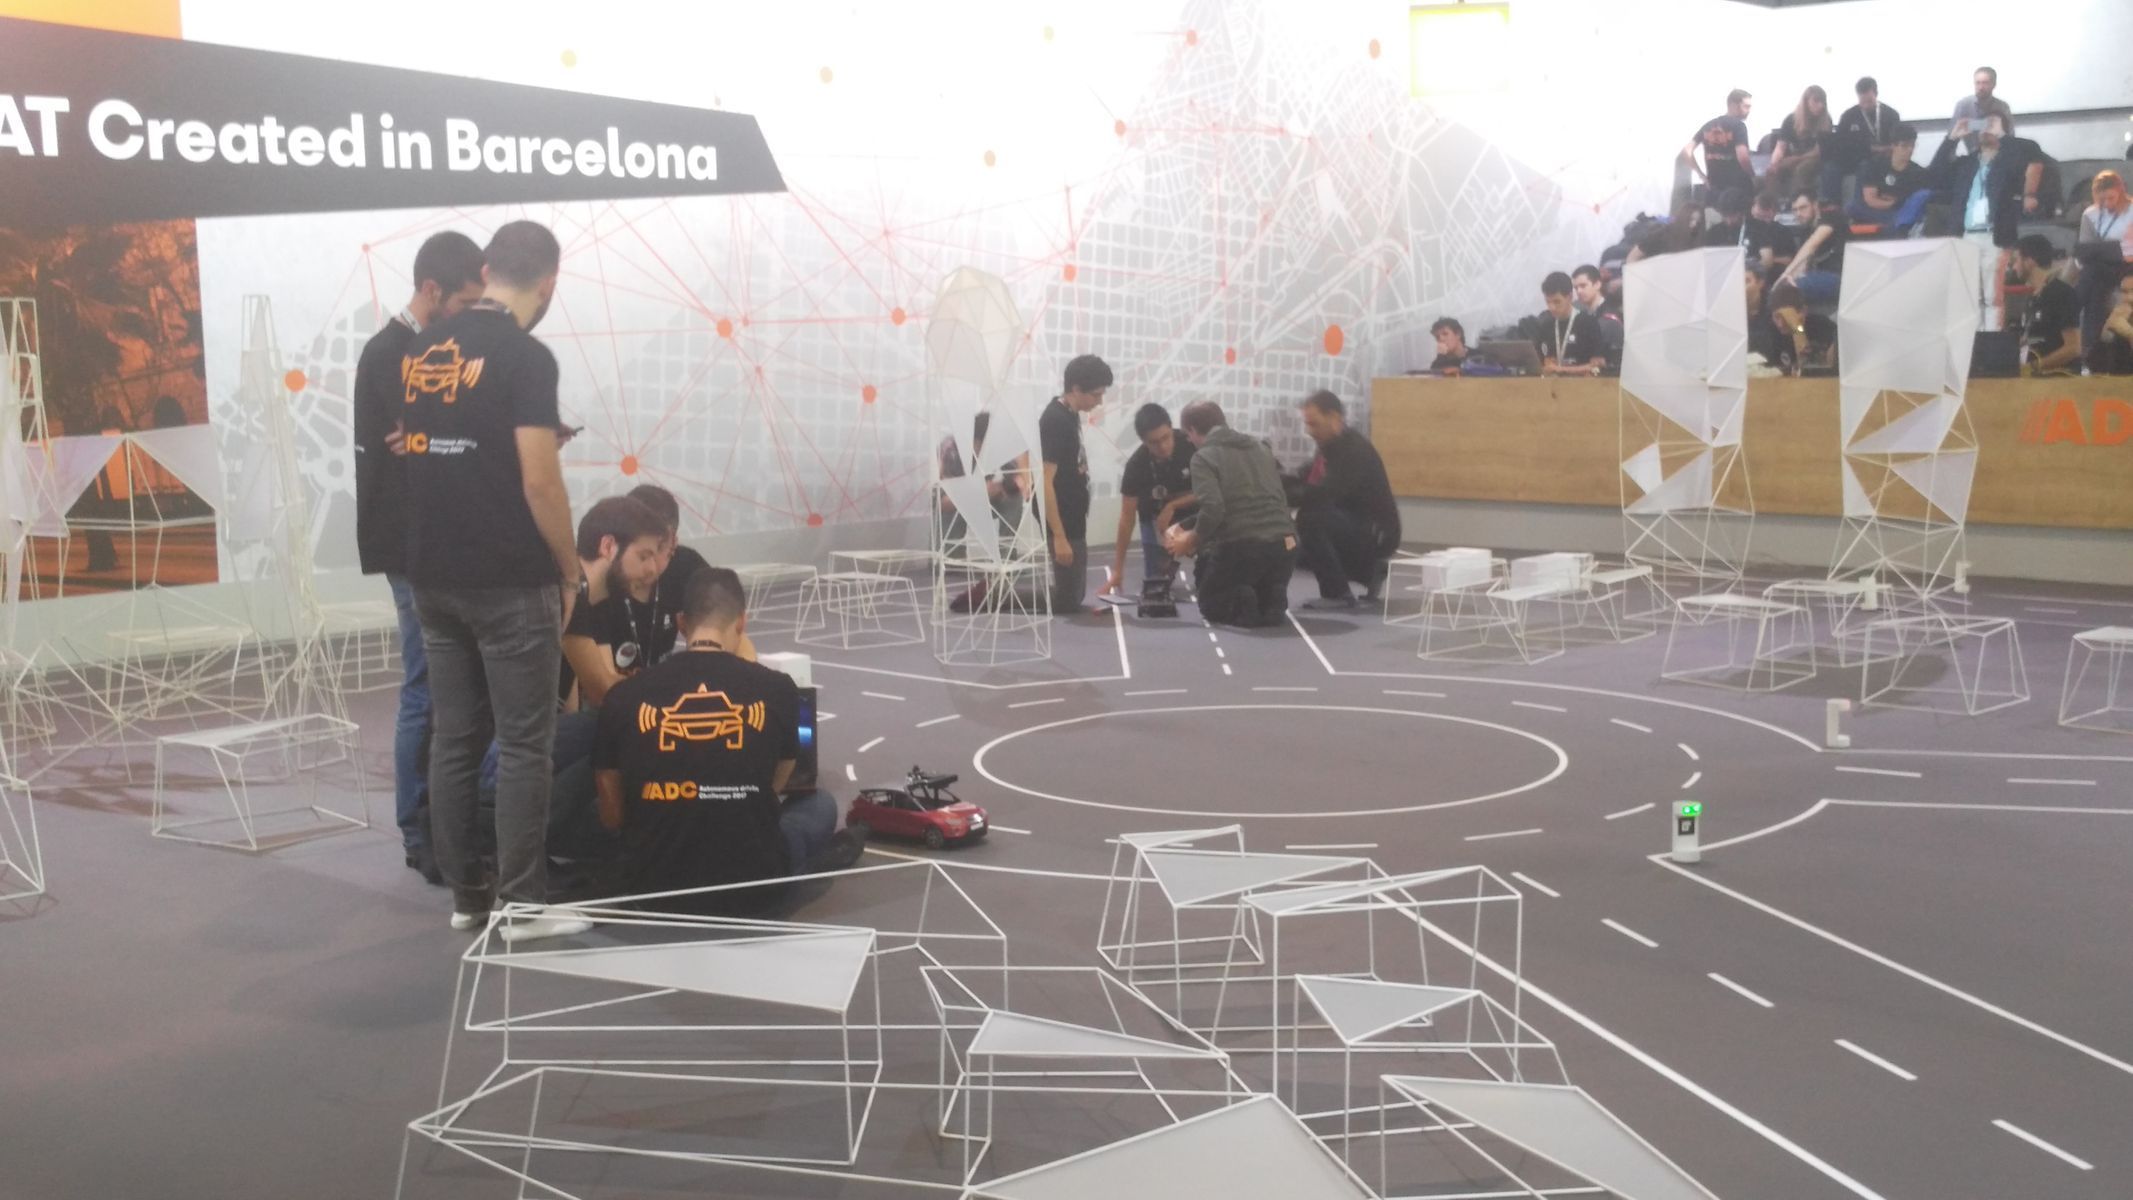 Smart City Expo World Congress v Barceloně